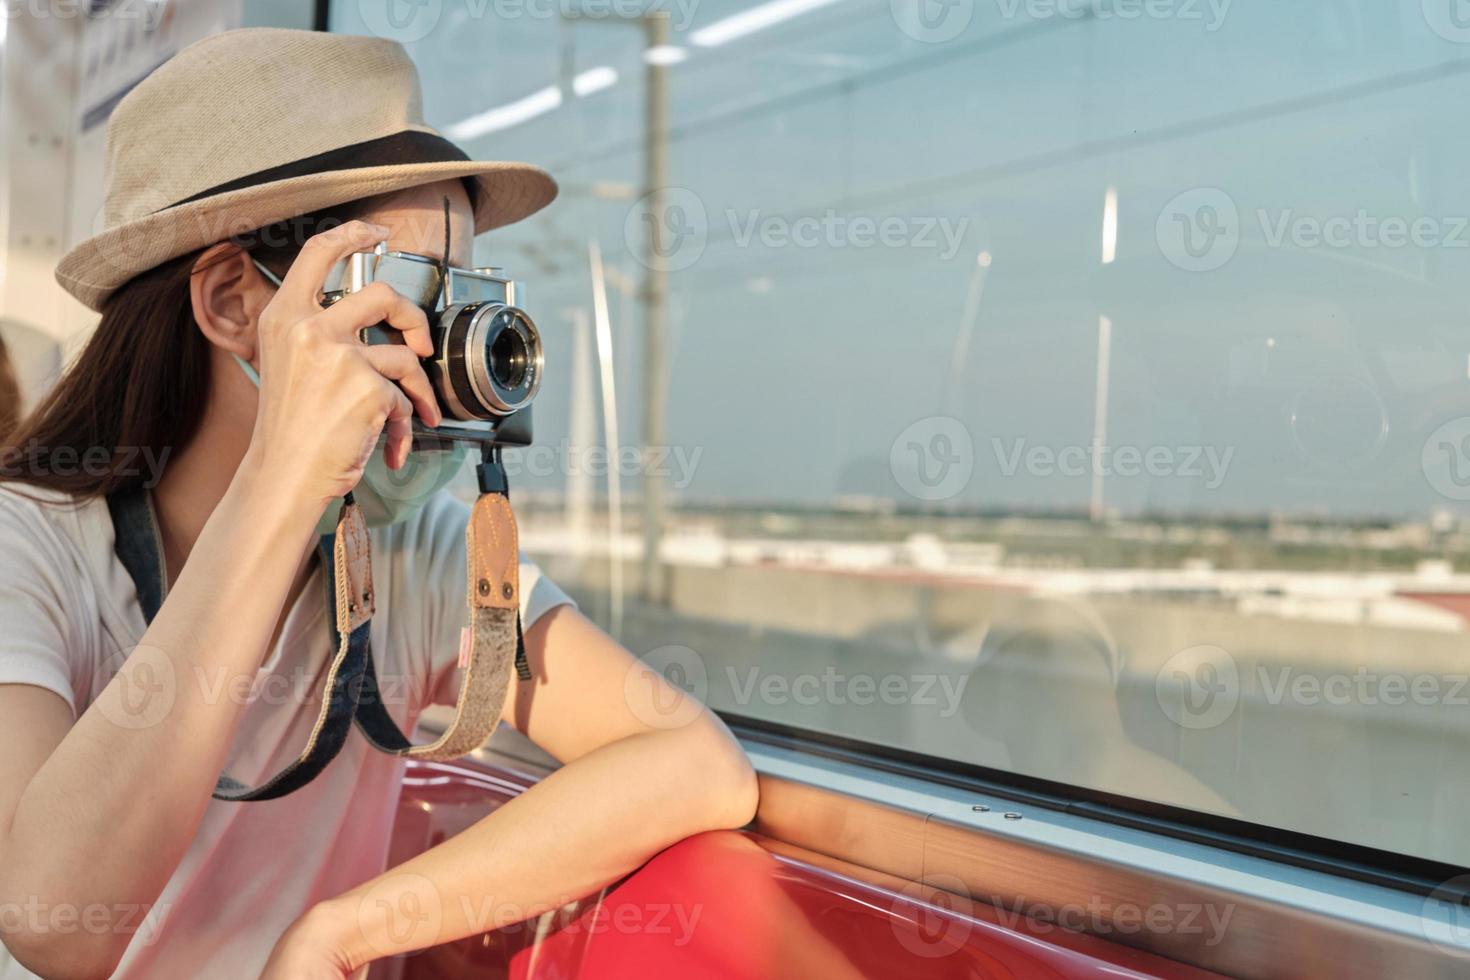 belle touriste asiatique avec masque facial est assise sur un siège rouge, voyageant en train, prenant une photo instantanée, transportant en vue de la banlieue, profitant du mode de vie des passagers par chemin de fer, vacances de voyage heureux.